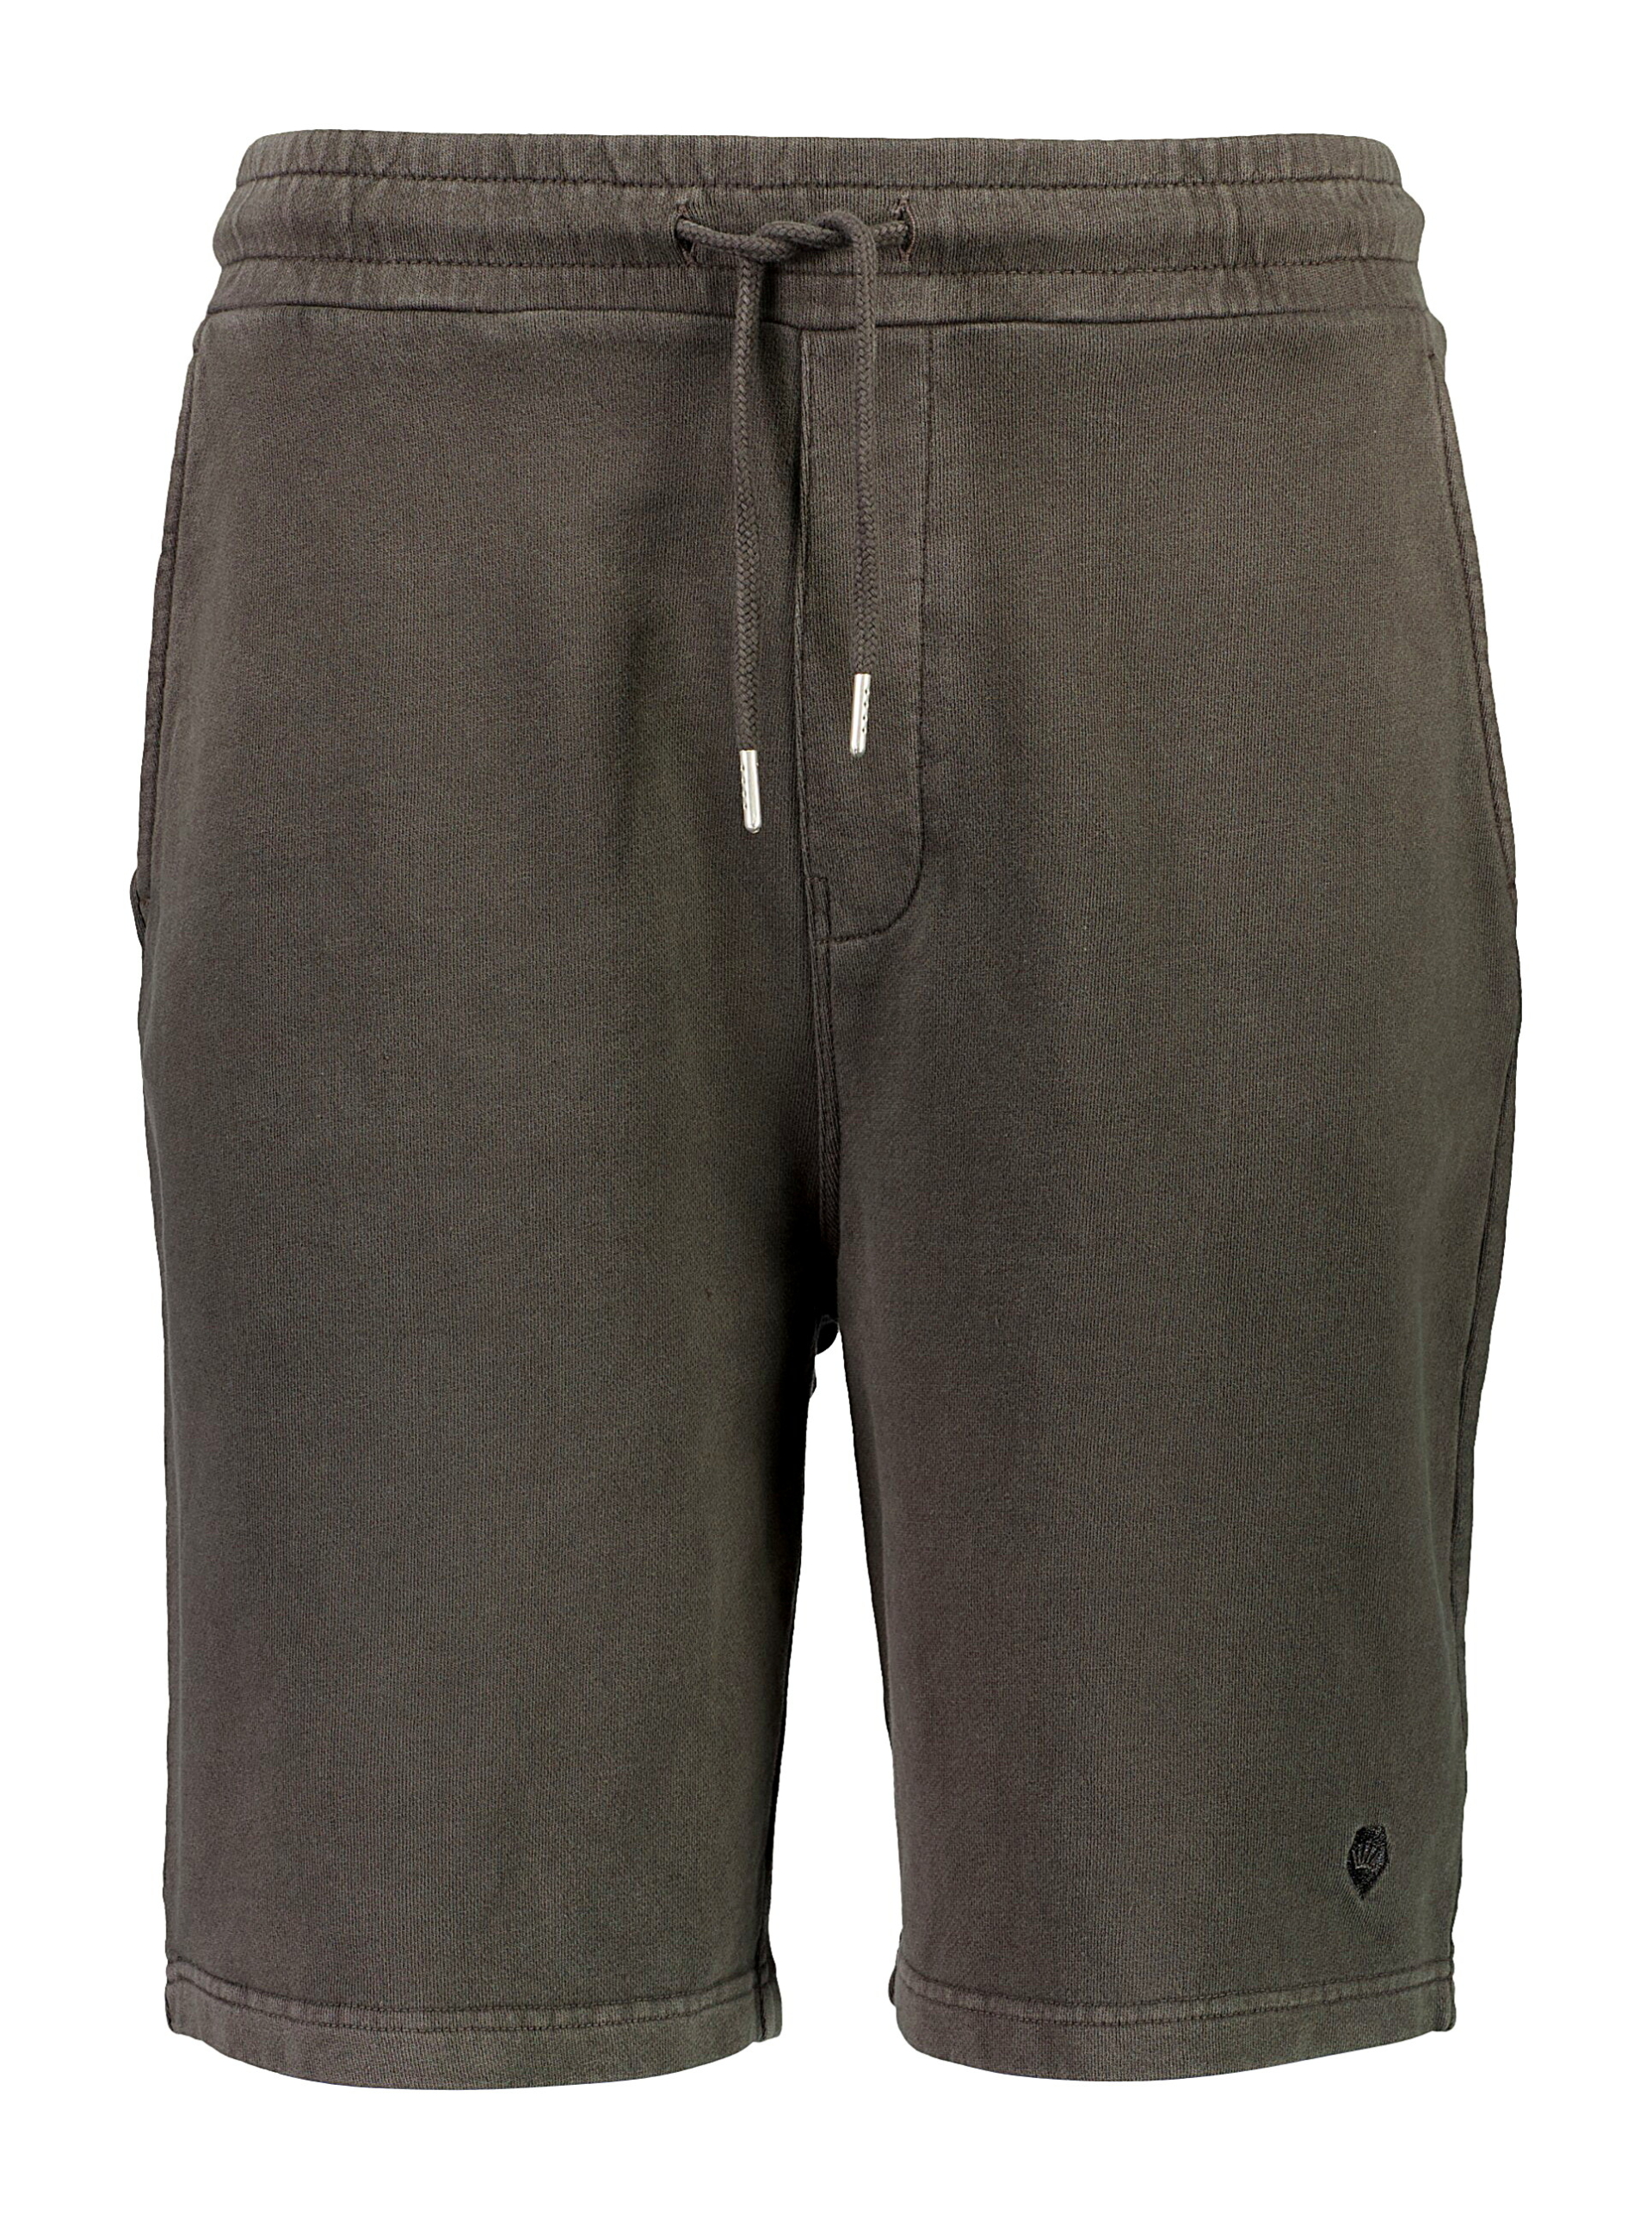 Junk de Luxe Casual shorts sort / dusty black